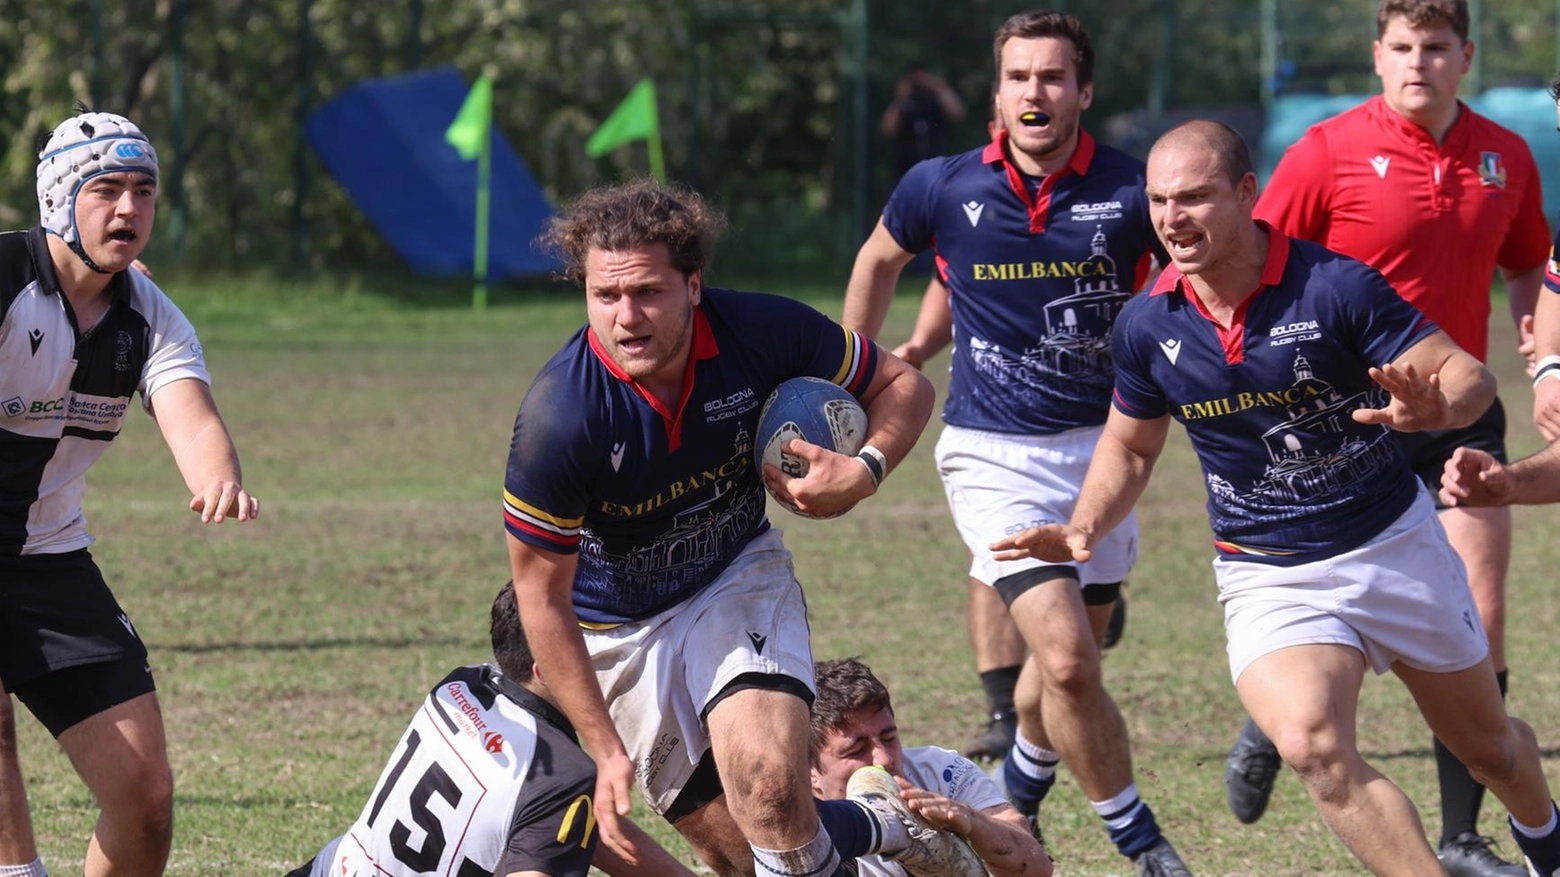 Rugby serie B La squadra di Brolis supera 26-0 il Cus Siena in trasferta. Il team di Balboni batte 24-19 il San Benedetto ed è certo del quinto posto.